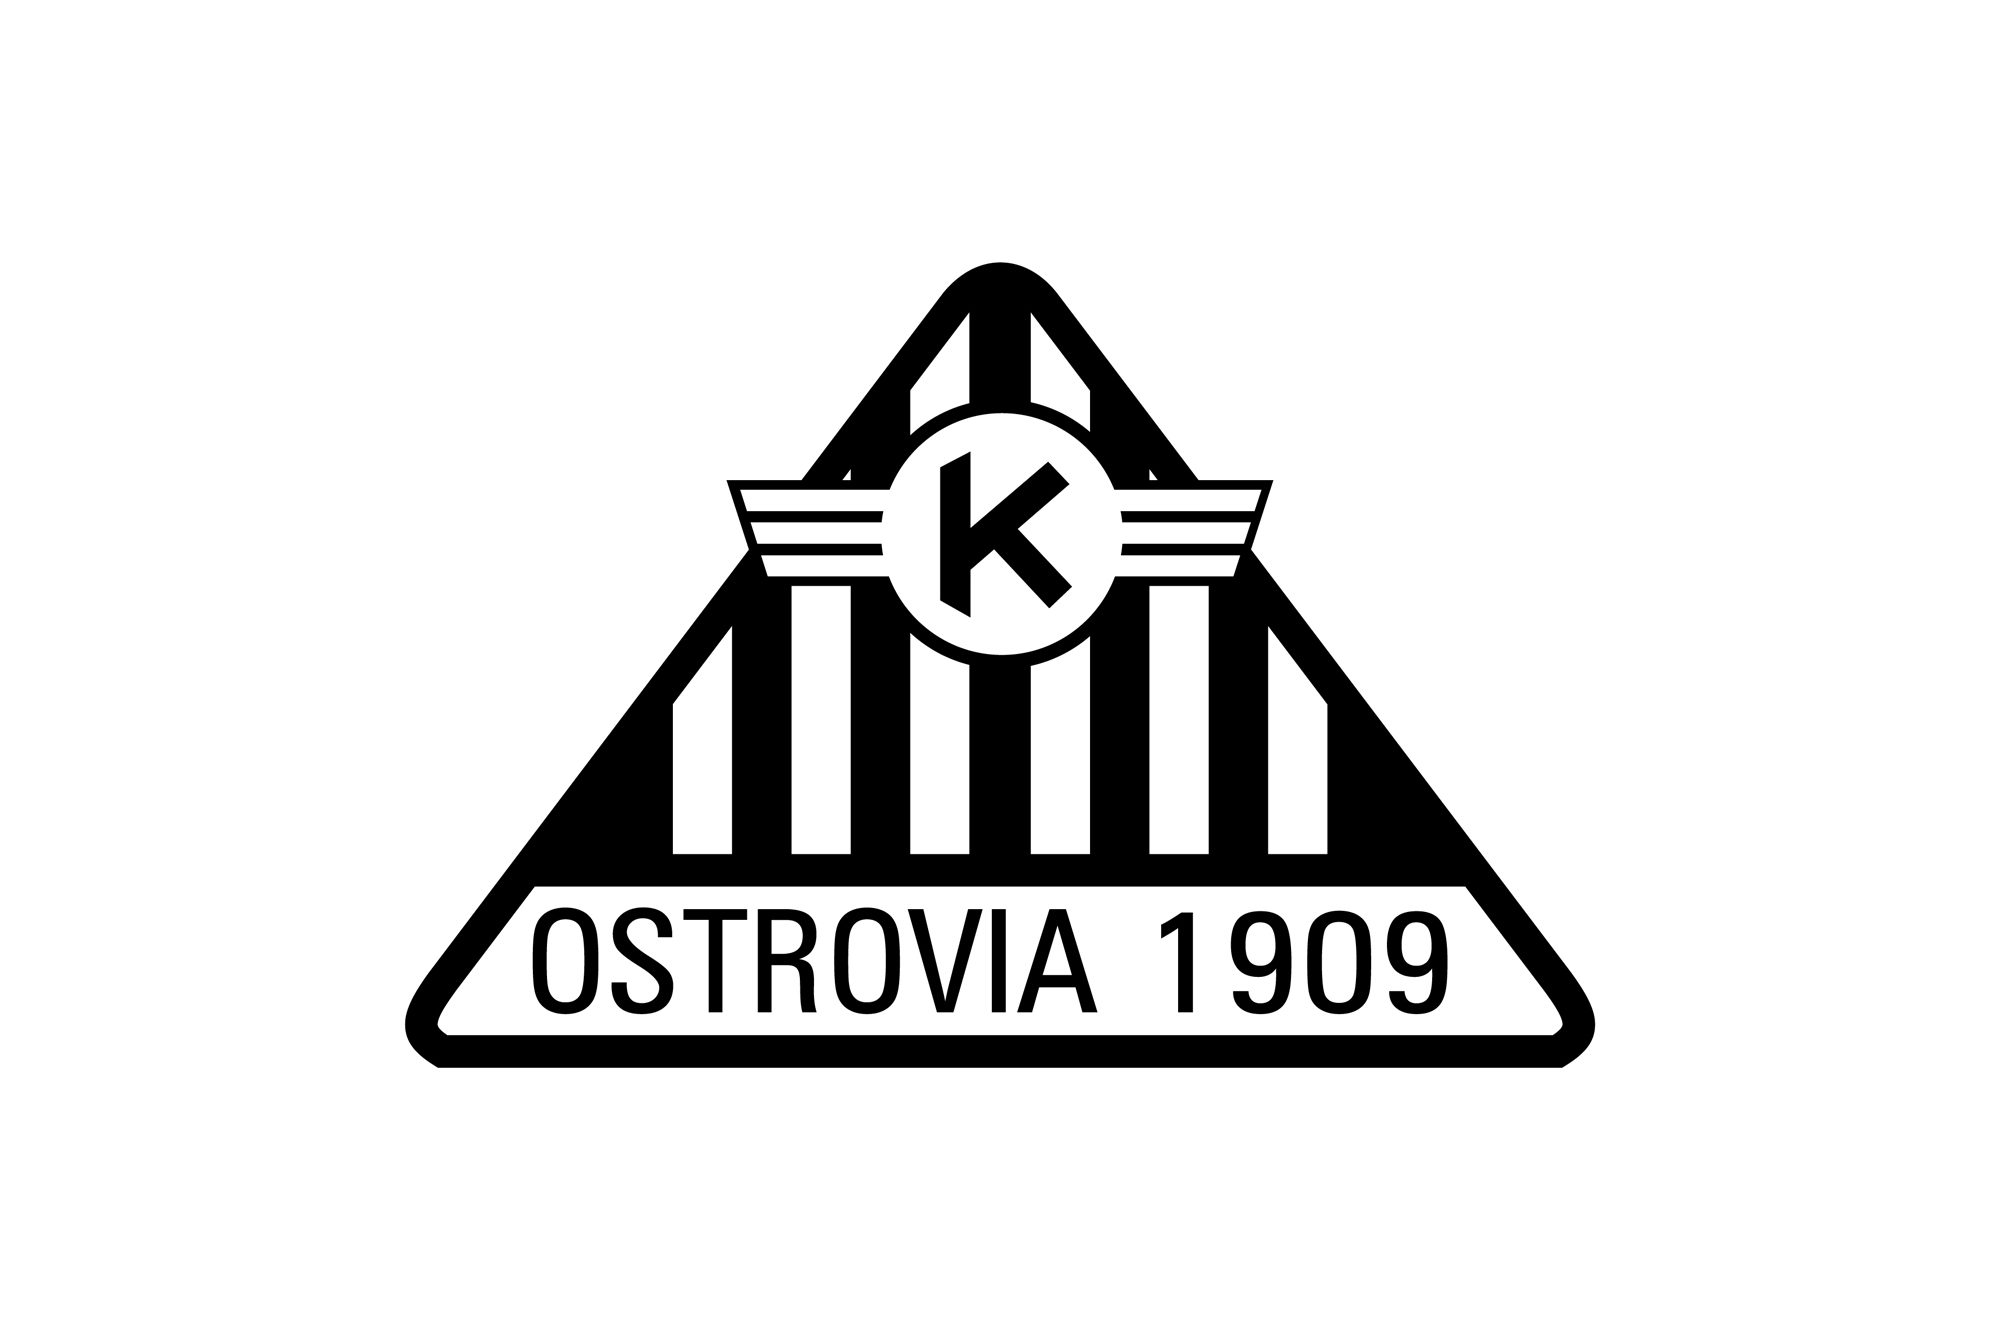 Ostrovia 1909 - logo PLANSZA 30x30cm EDYCJA